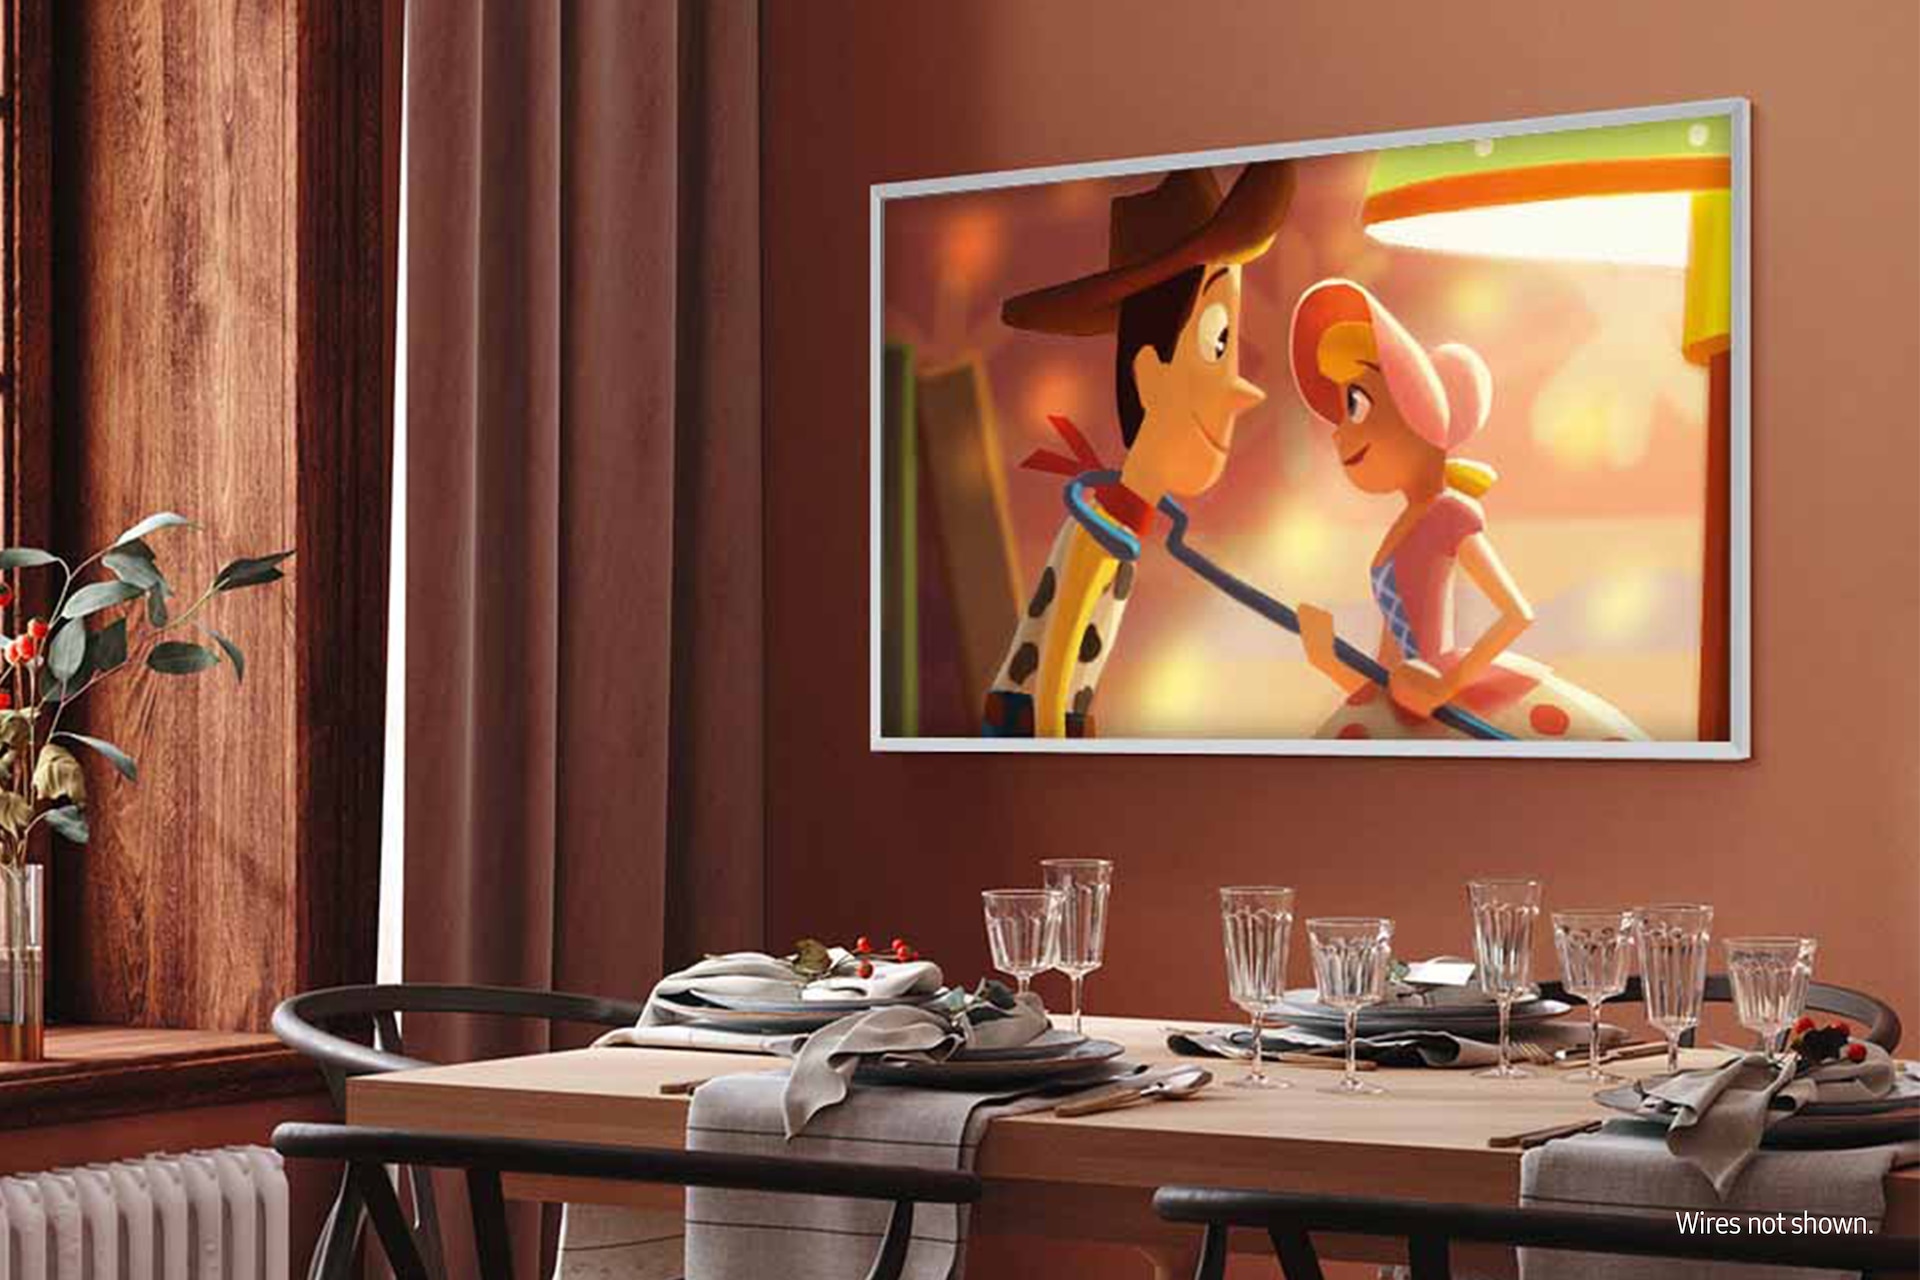 2023 Samsung The Frame 65 / QLED 4K Smart TV